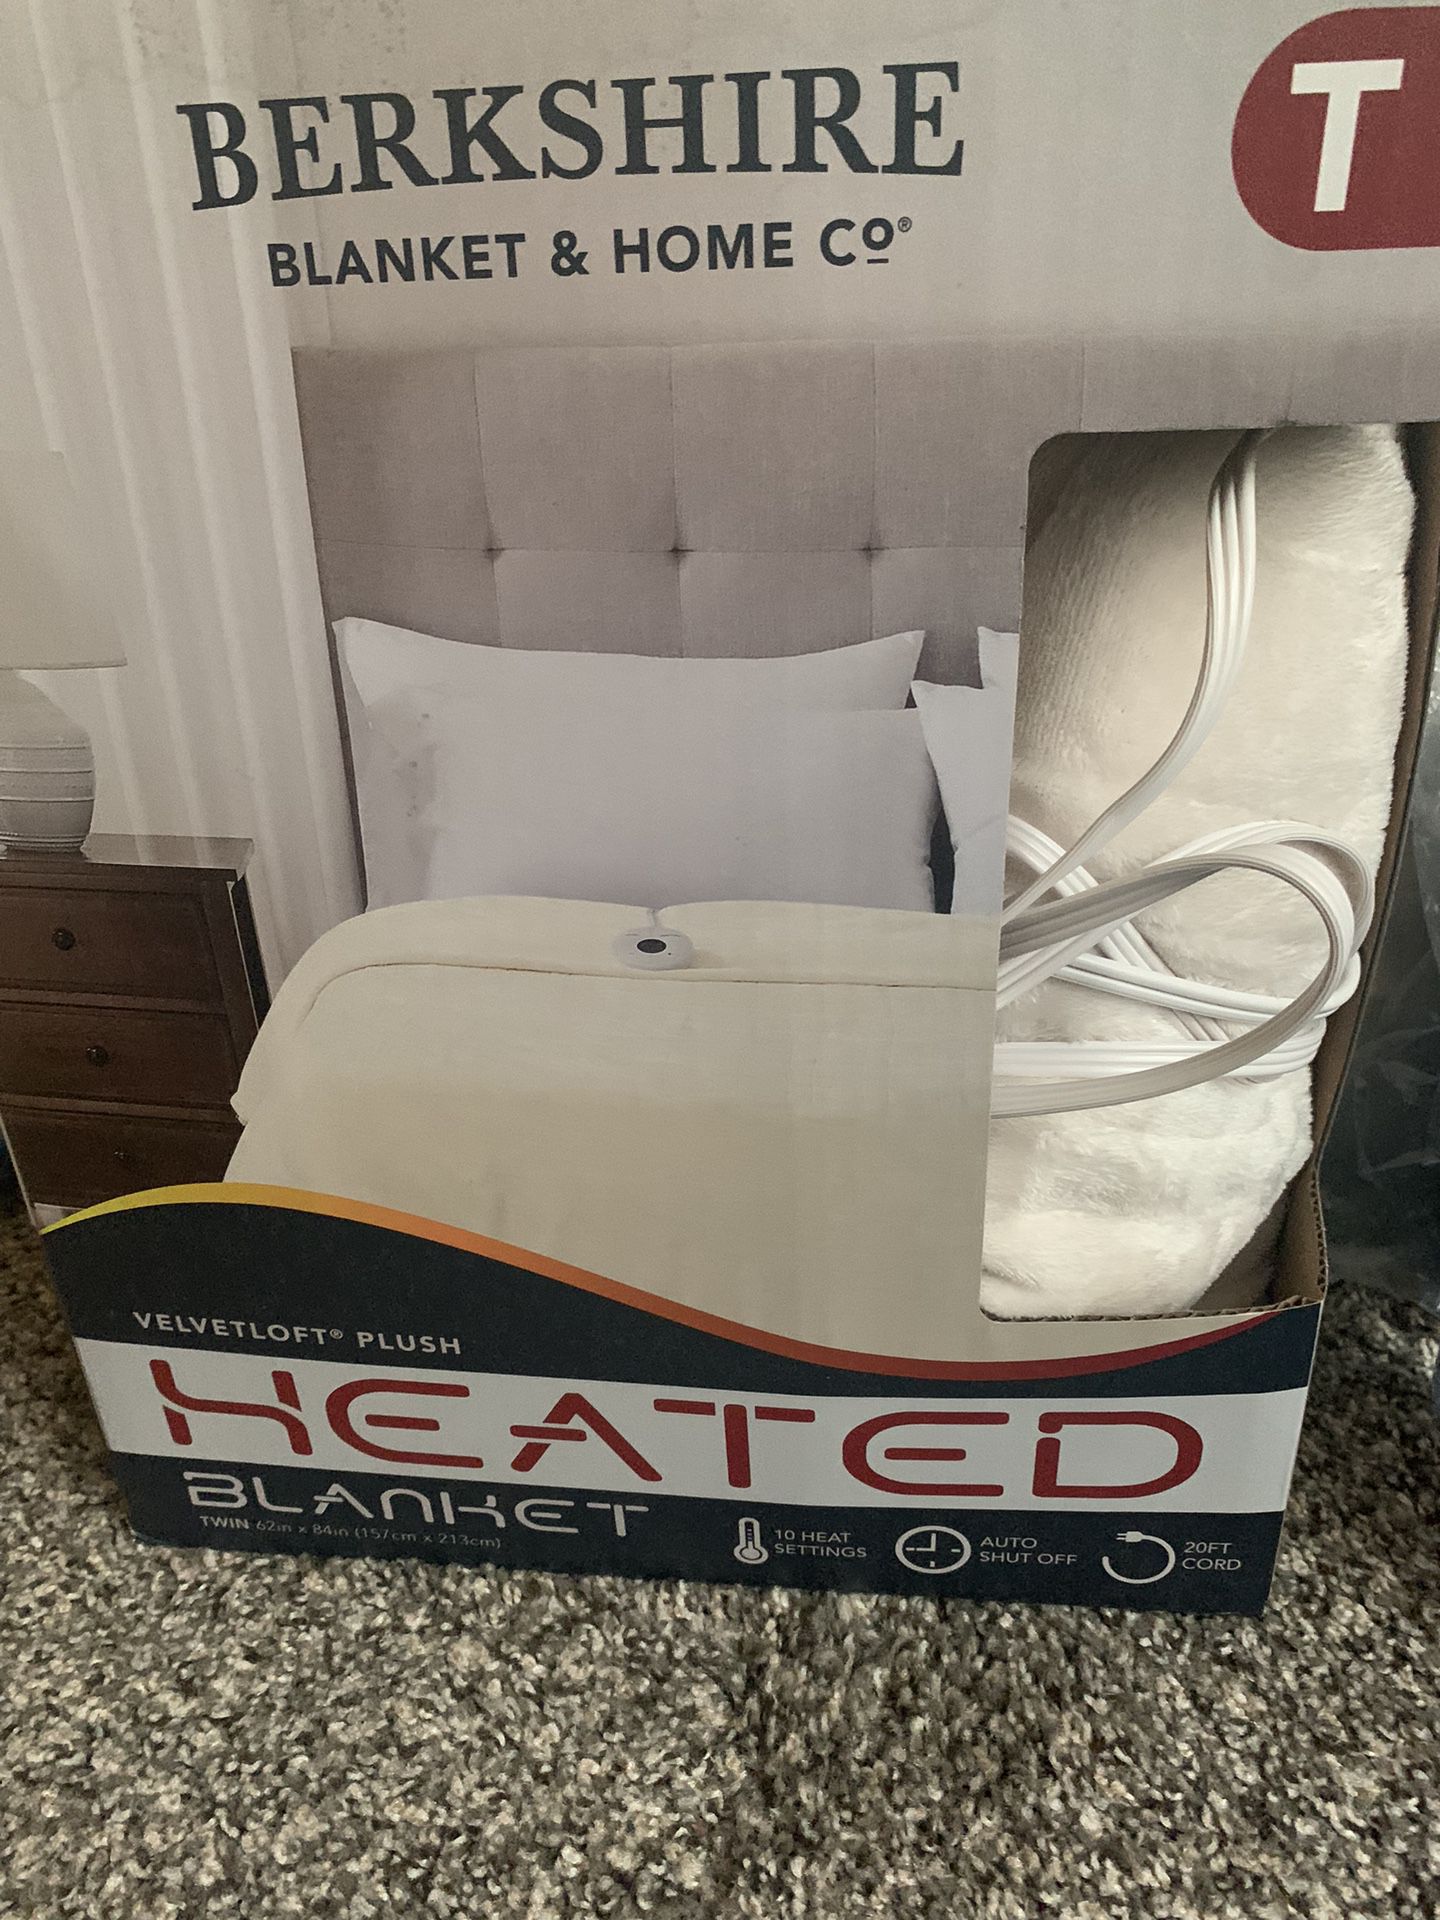 Berkshire Heated Blanket $30